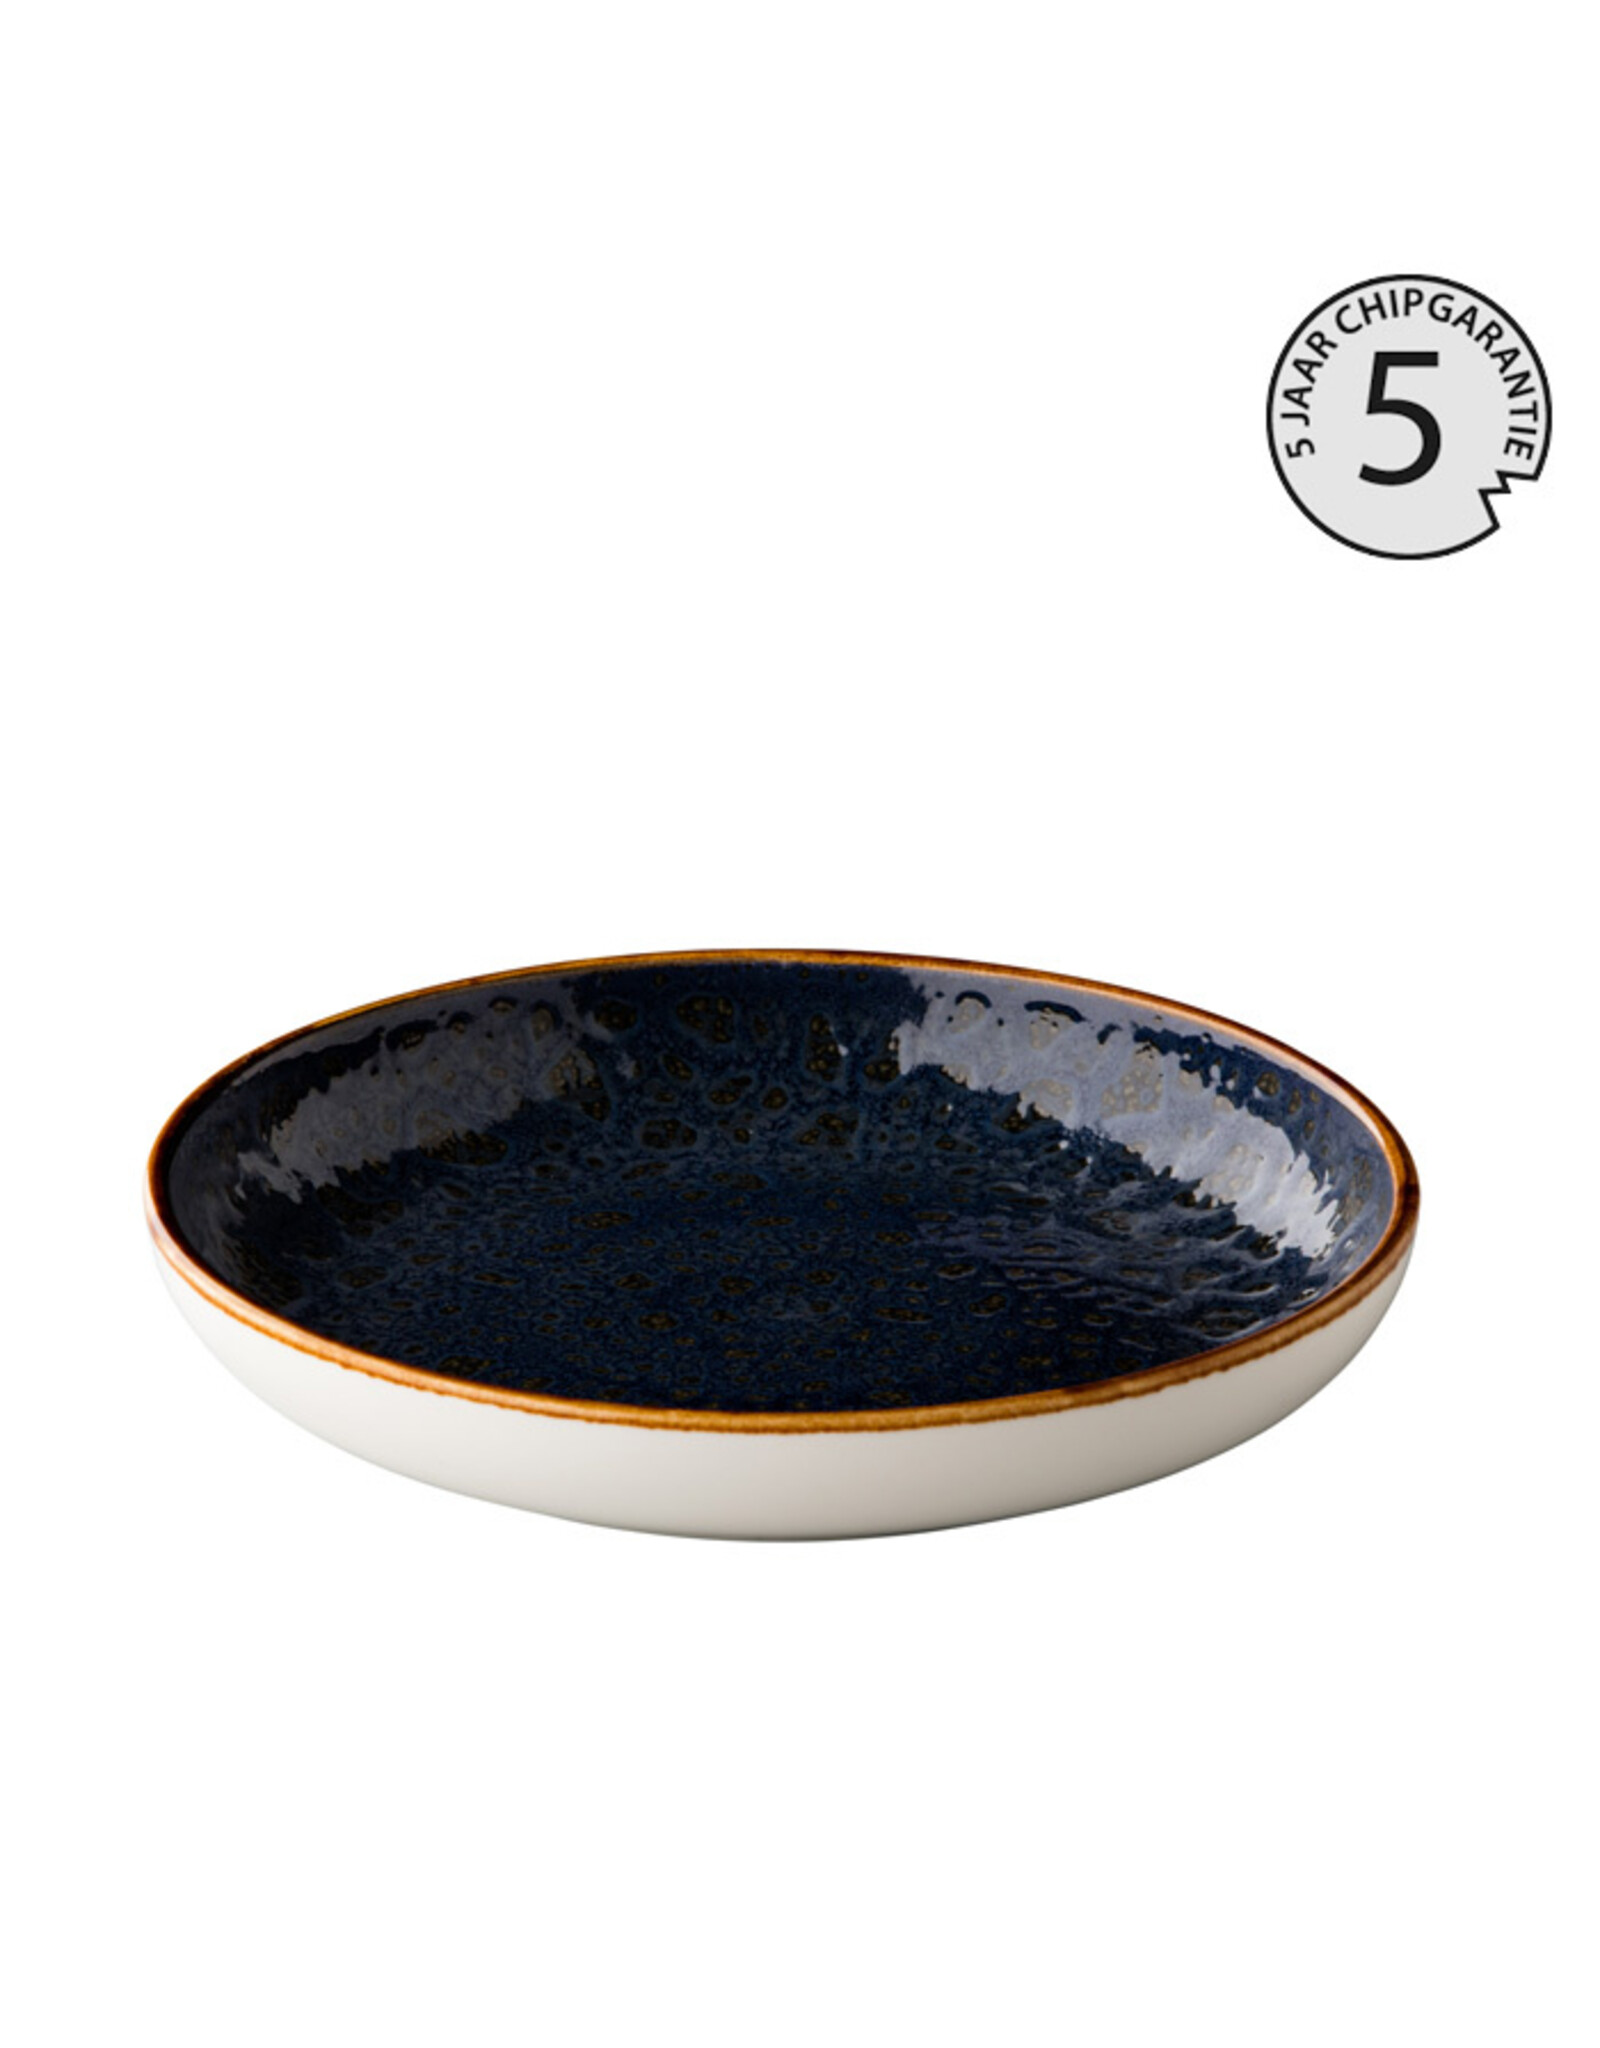 Stylepoint Jersey diep rond bord met opstaande rand blauw 23.5 cm  - 5 jaar chipgarantie